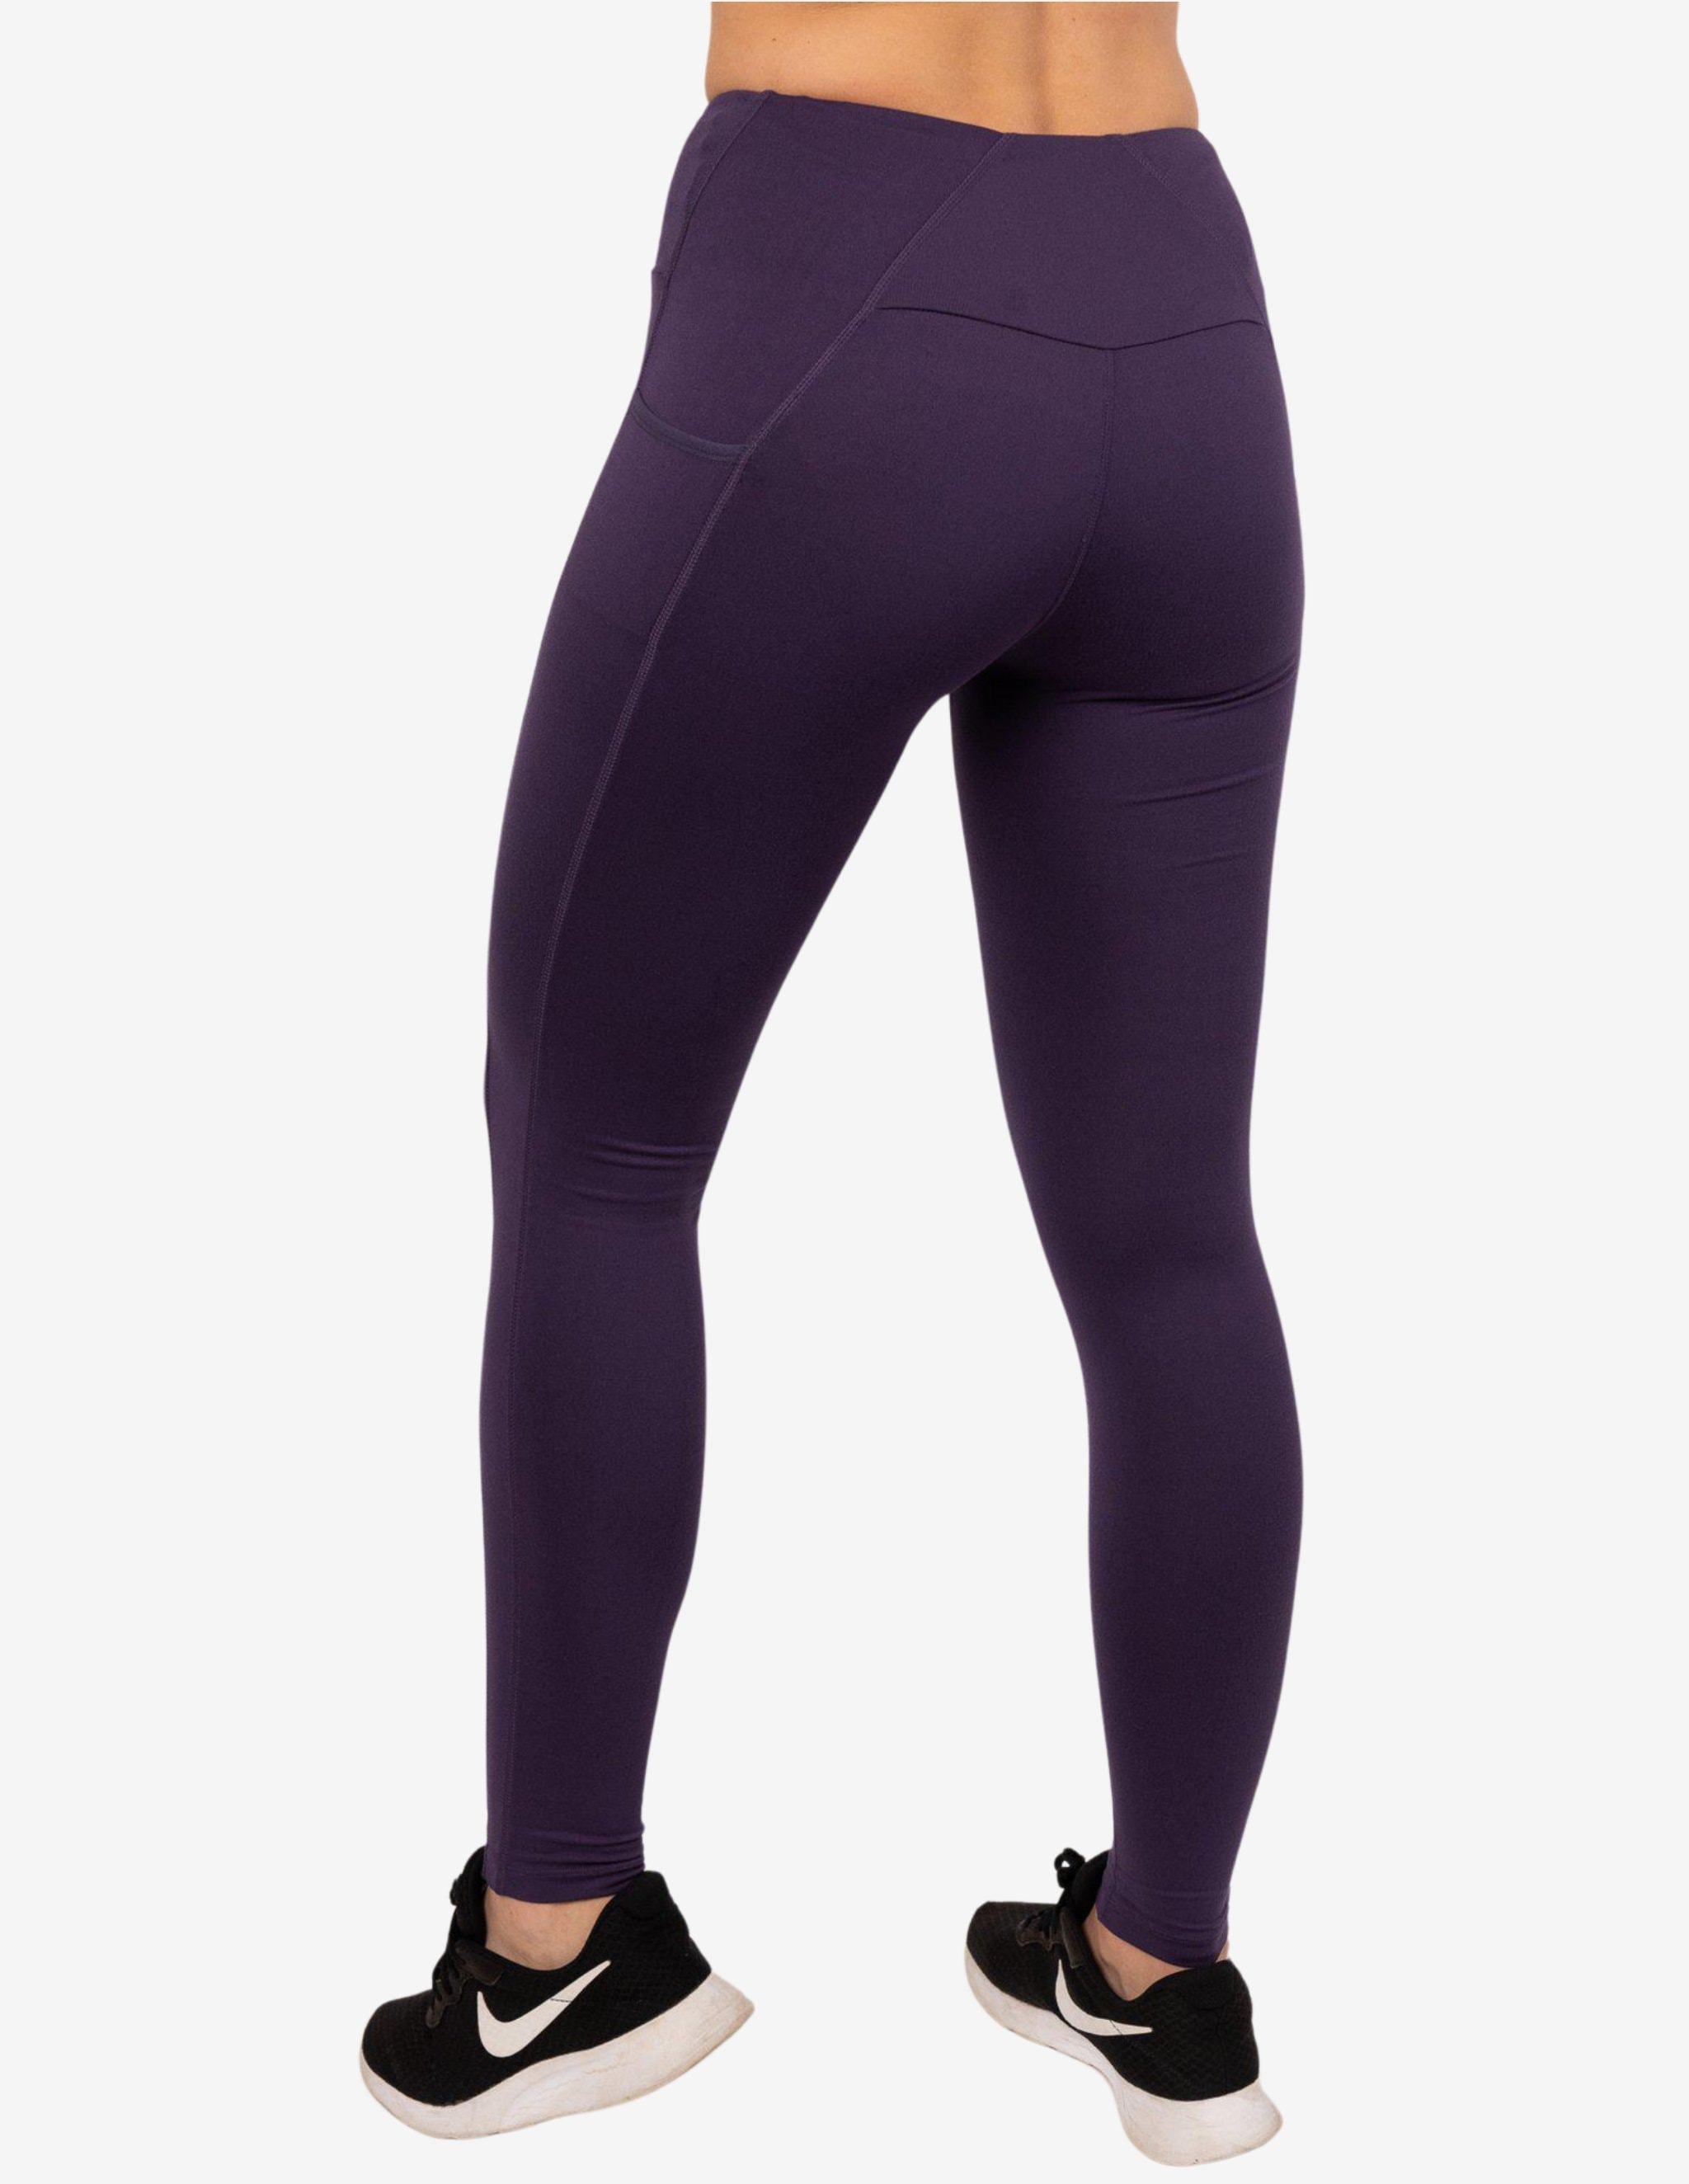 Purple workout legging – Lecurveculture & Allenmichael Collection